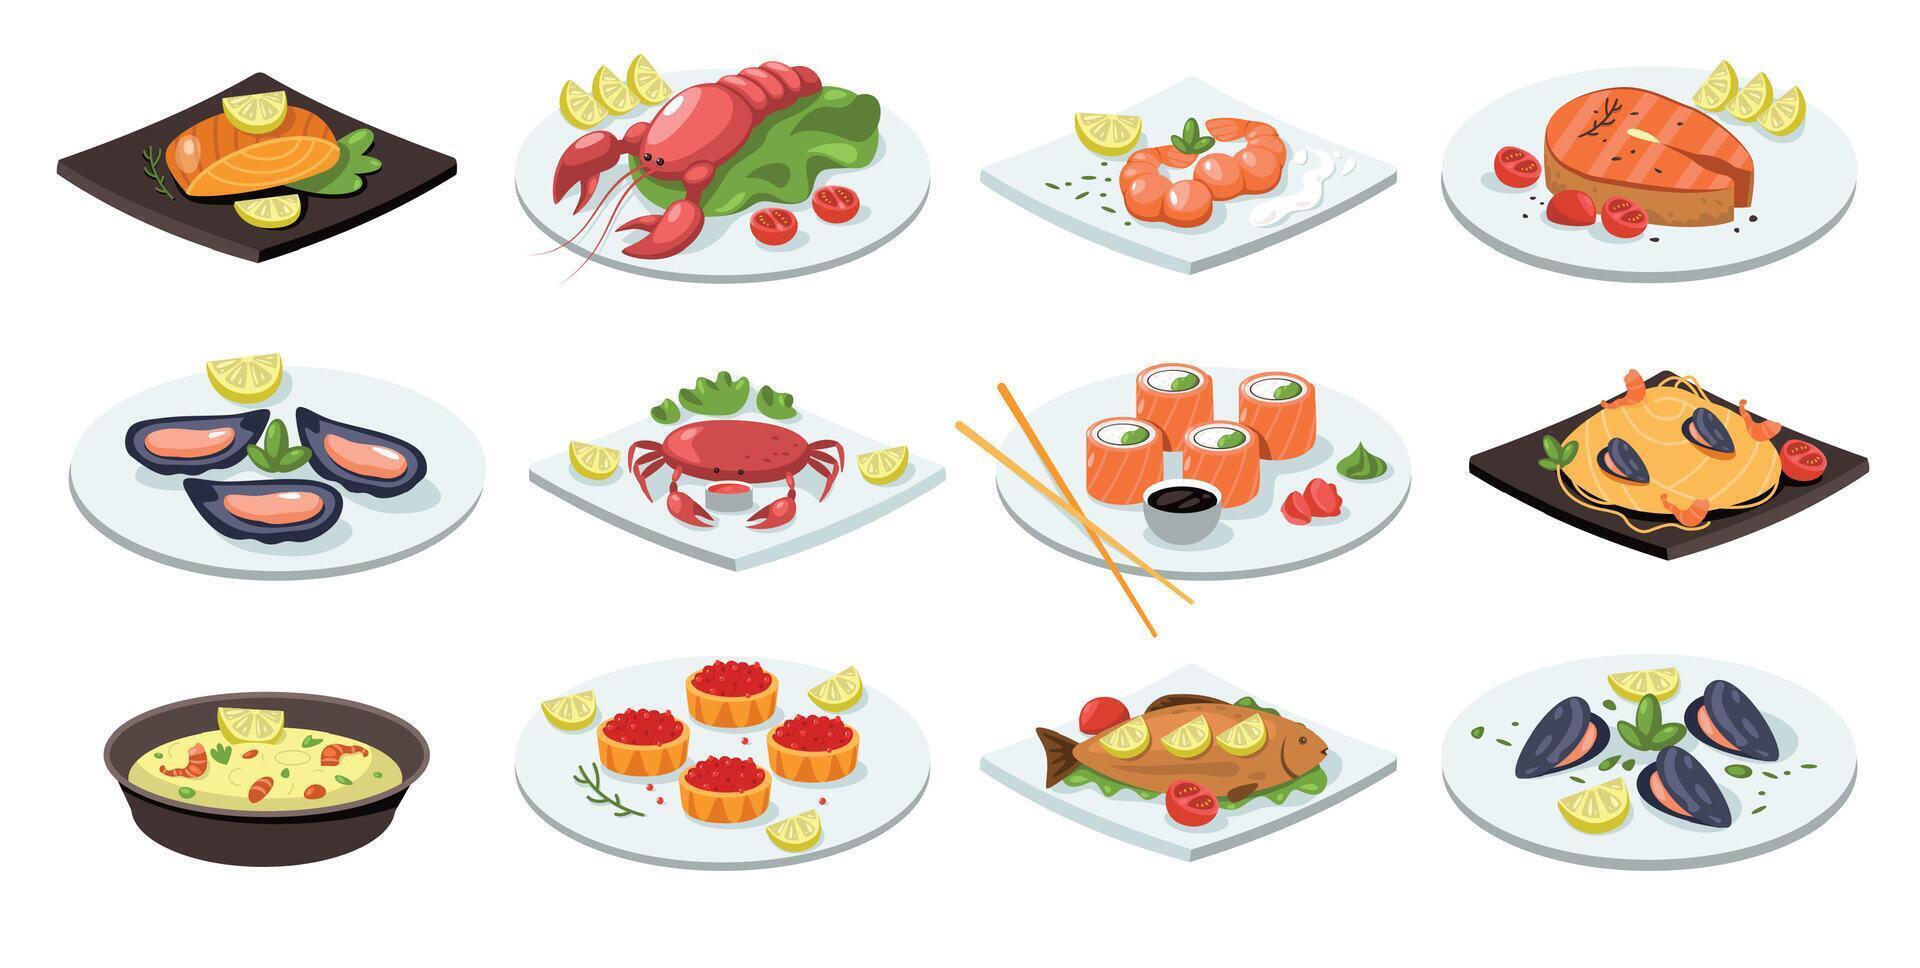 Fisch Mahlzeit. Karikatur Meeresfrüchte Geschirr traditionell asiatisch Essen, eben Lachs rollen Hummer Sushi Muschel Krabbe auf Teller japanisch Küche. Vektor isoliert einstellen